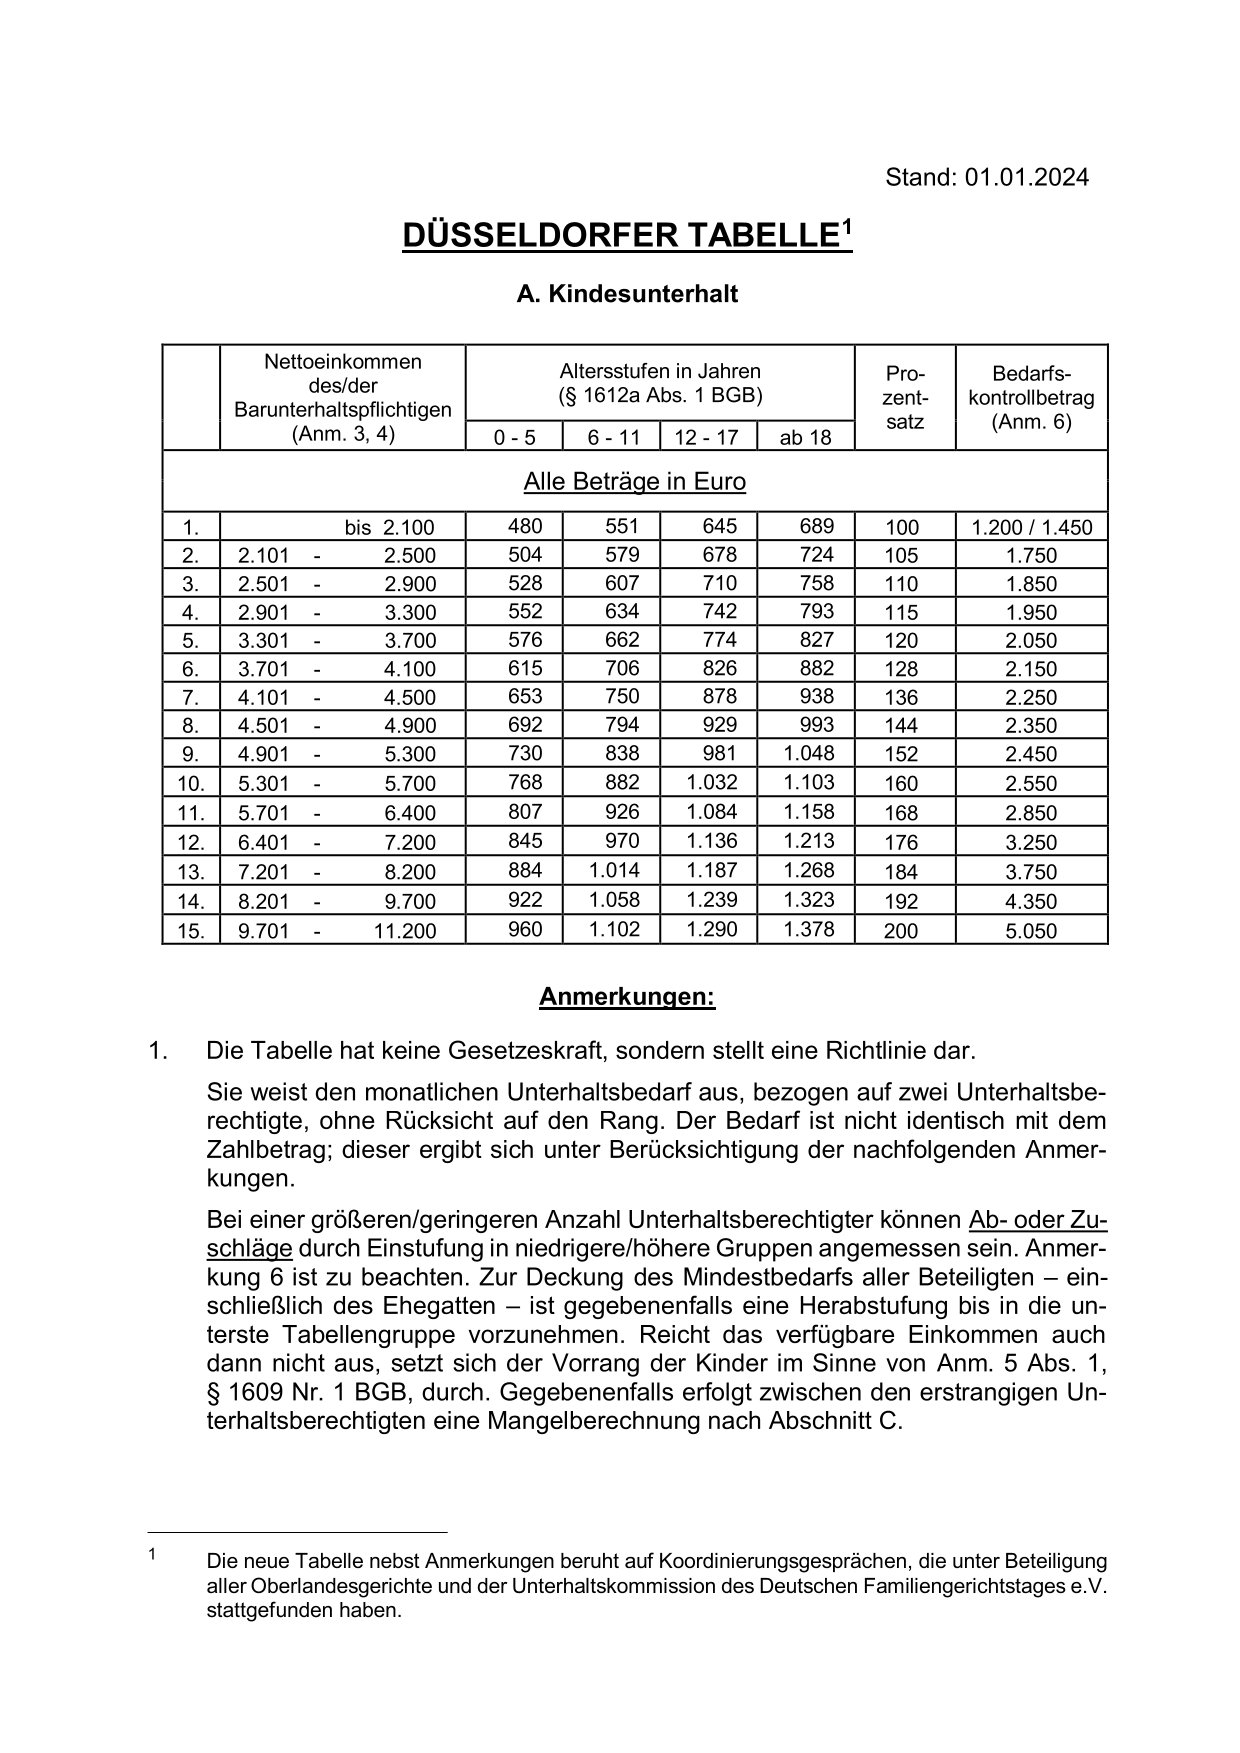 duesseldorfer tabelle 2024 1